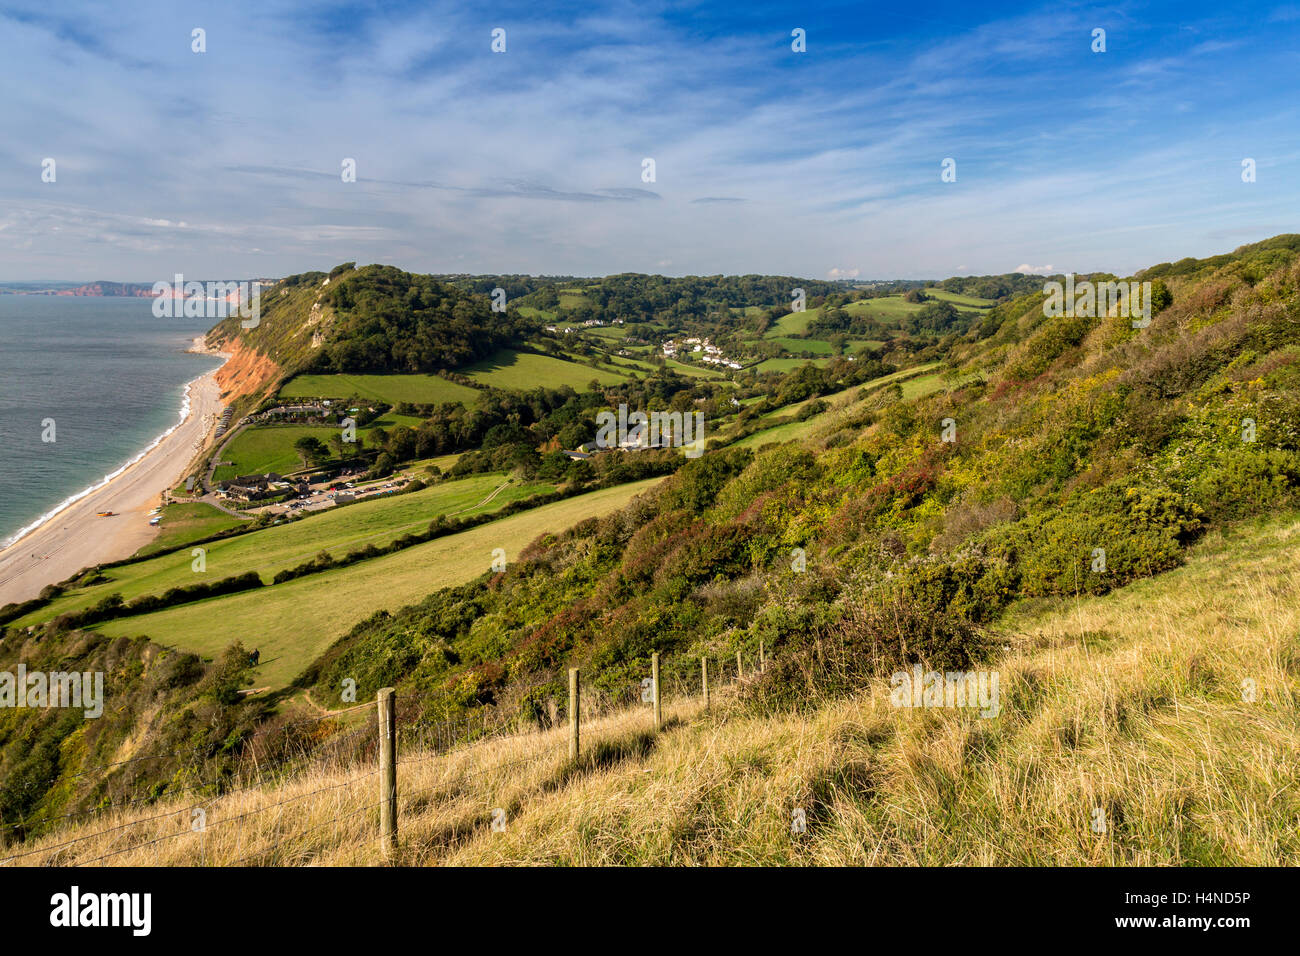 Regarder sur Branscombe village et la bouche de Falaise est sur la côte jurassique du sud du Devon, England, UK Banque D'Images